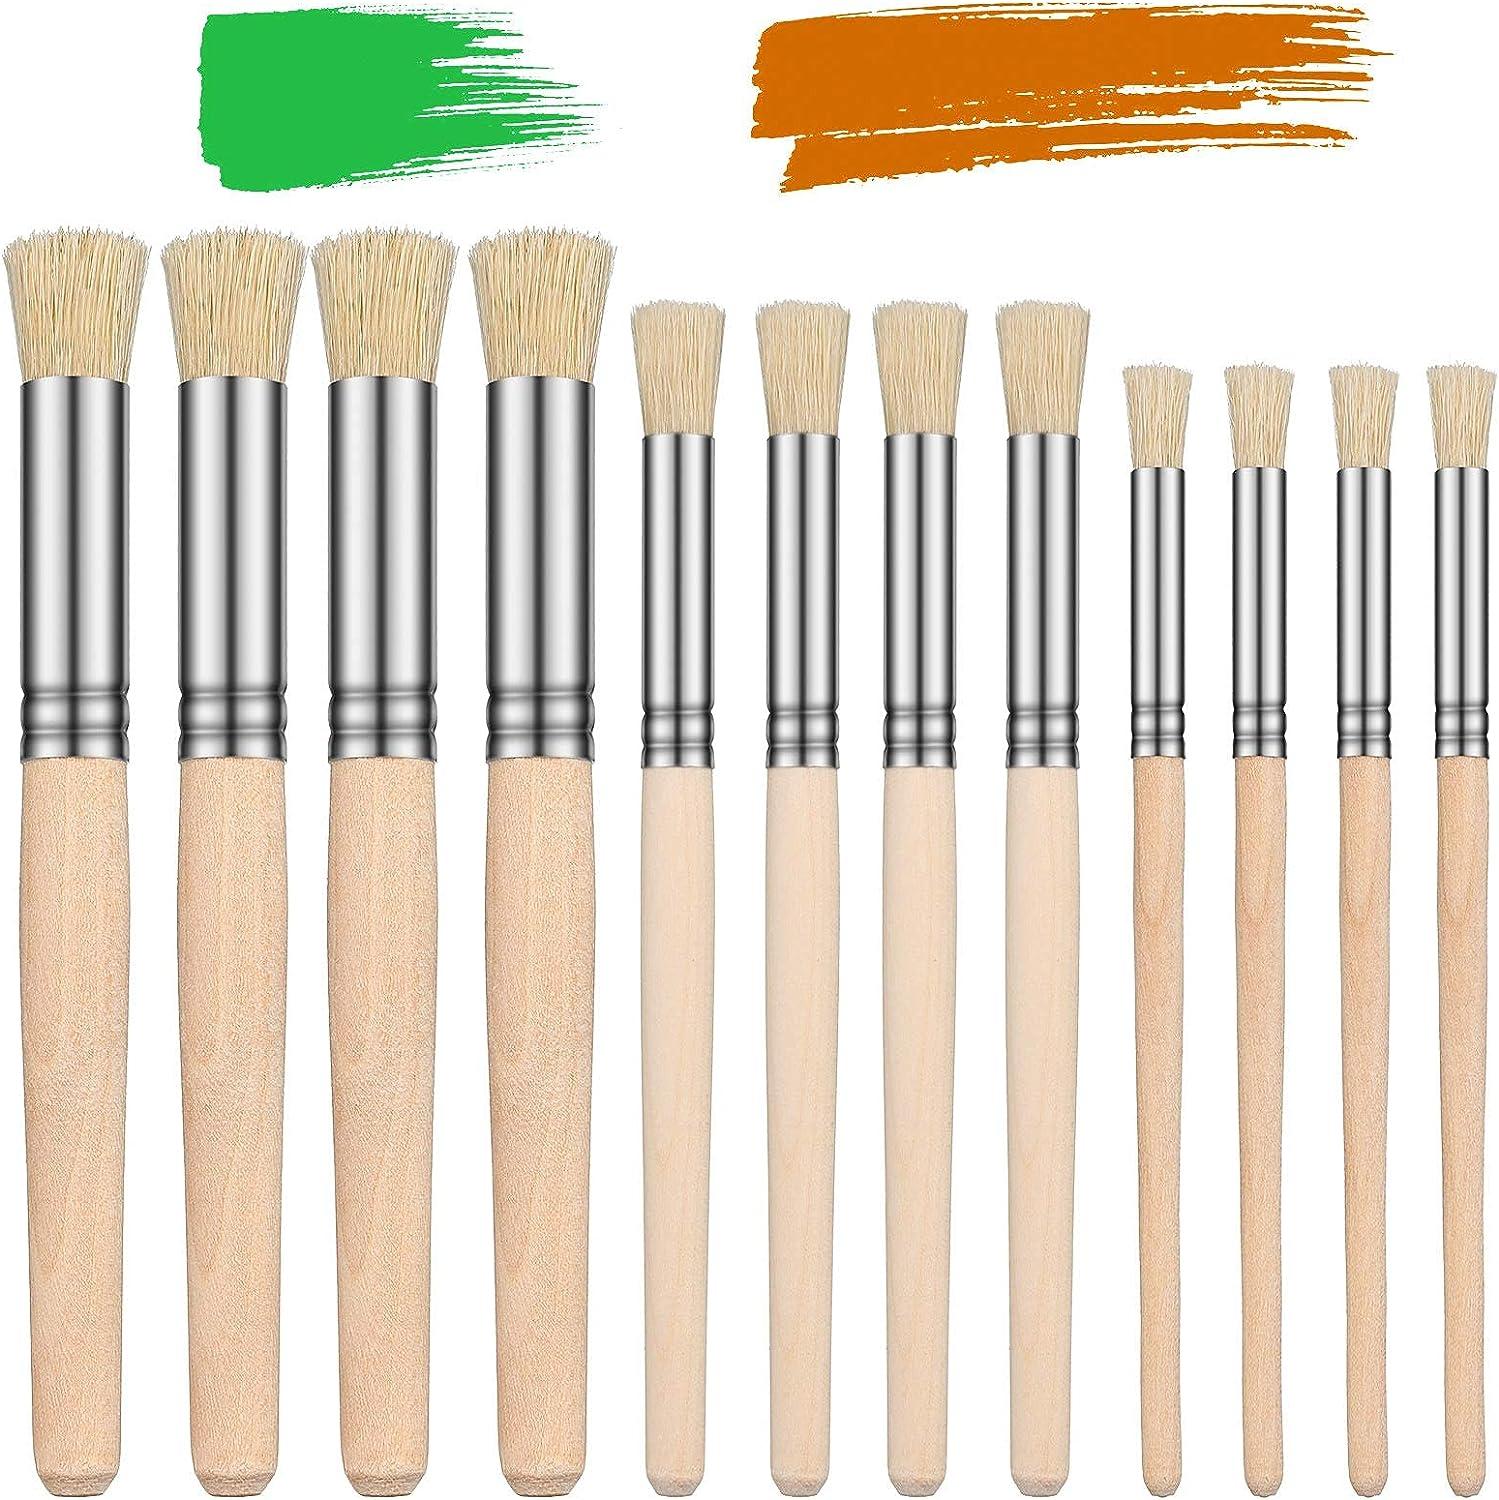 4 Pcs Wooden Stencil Brush Set - Natural Bristle